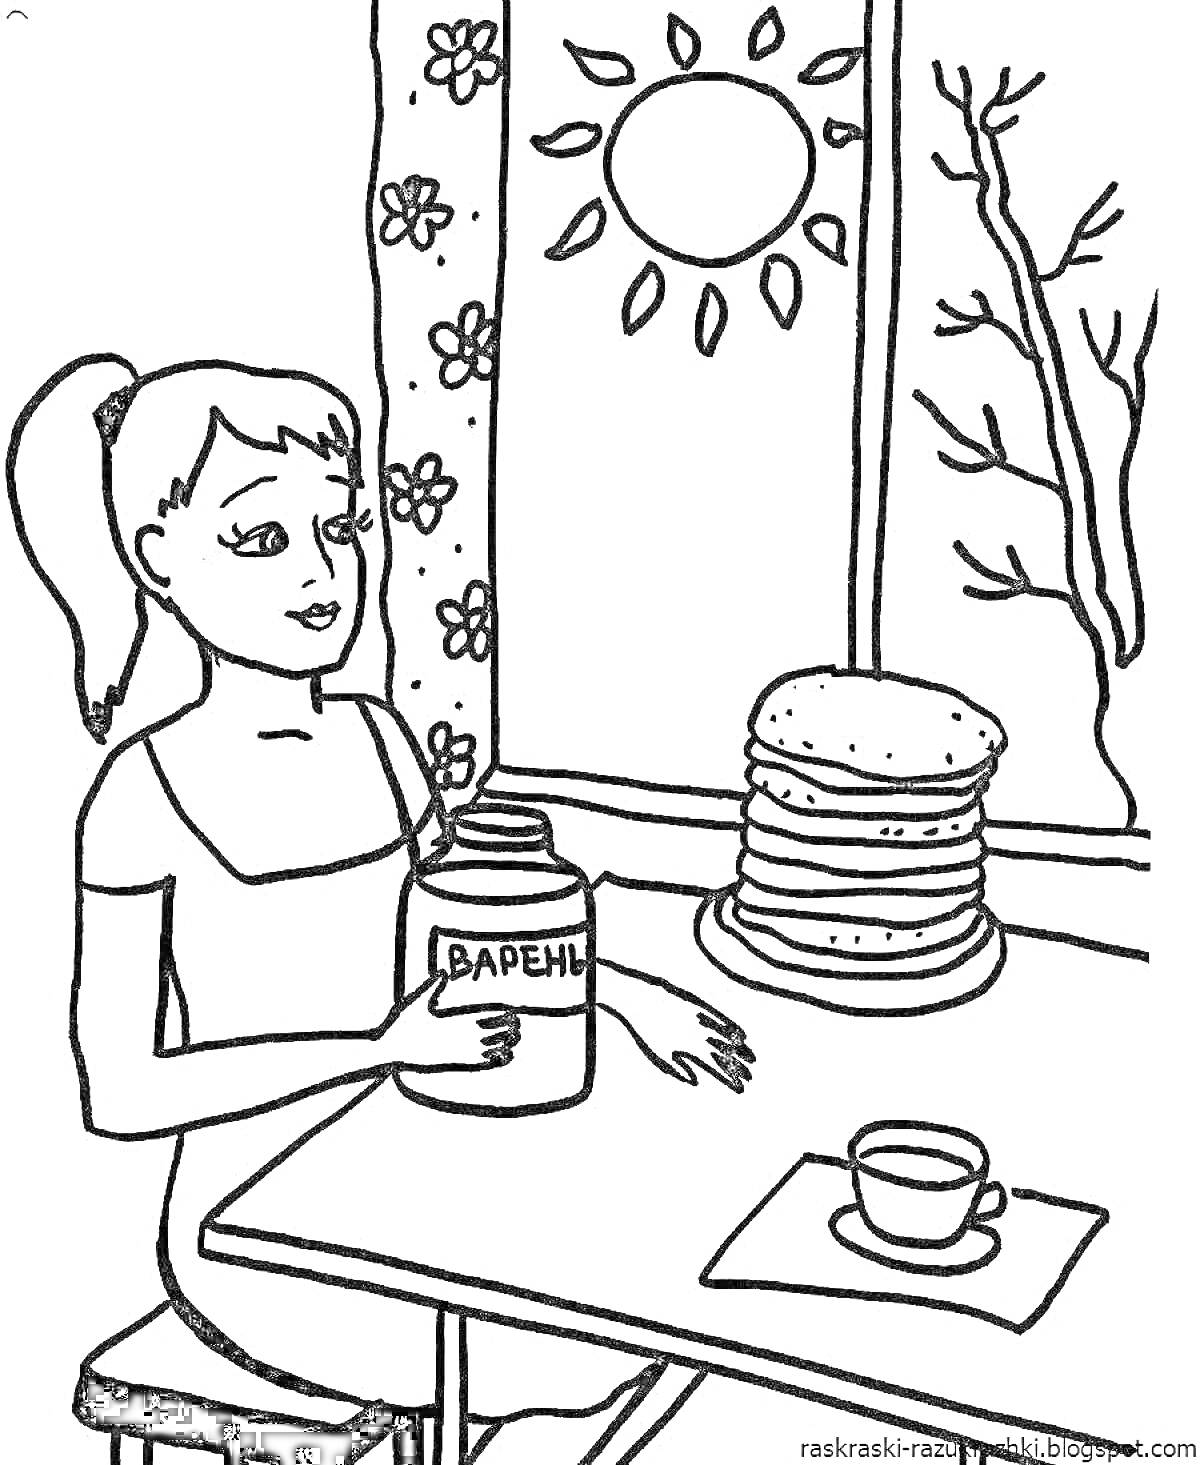 Раскраска Девочка с банкой варенья и стопкой блинов на столе, чашка чая, окно с солнечной погодой и цветами